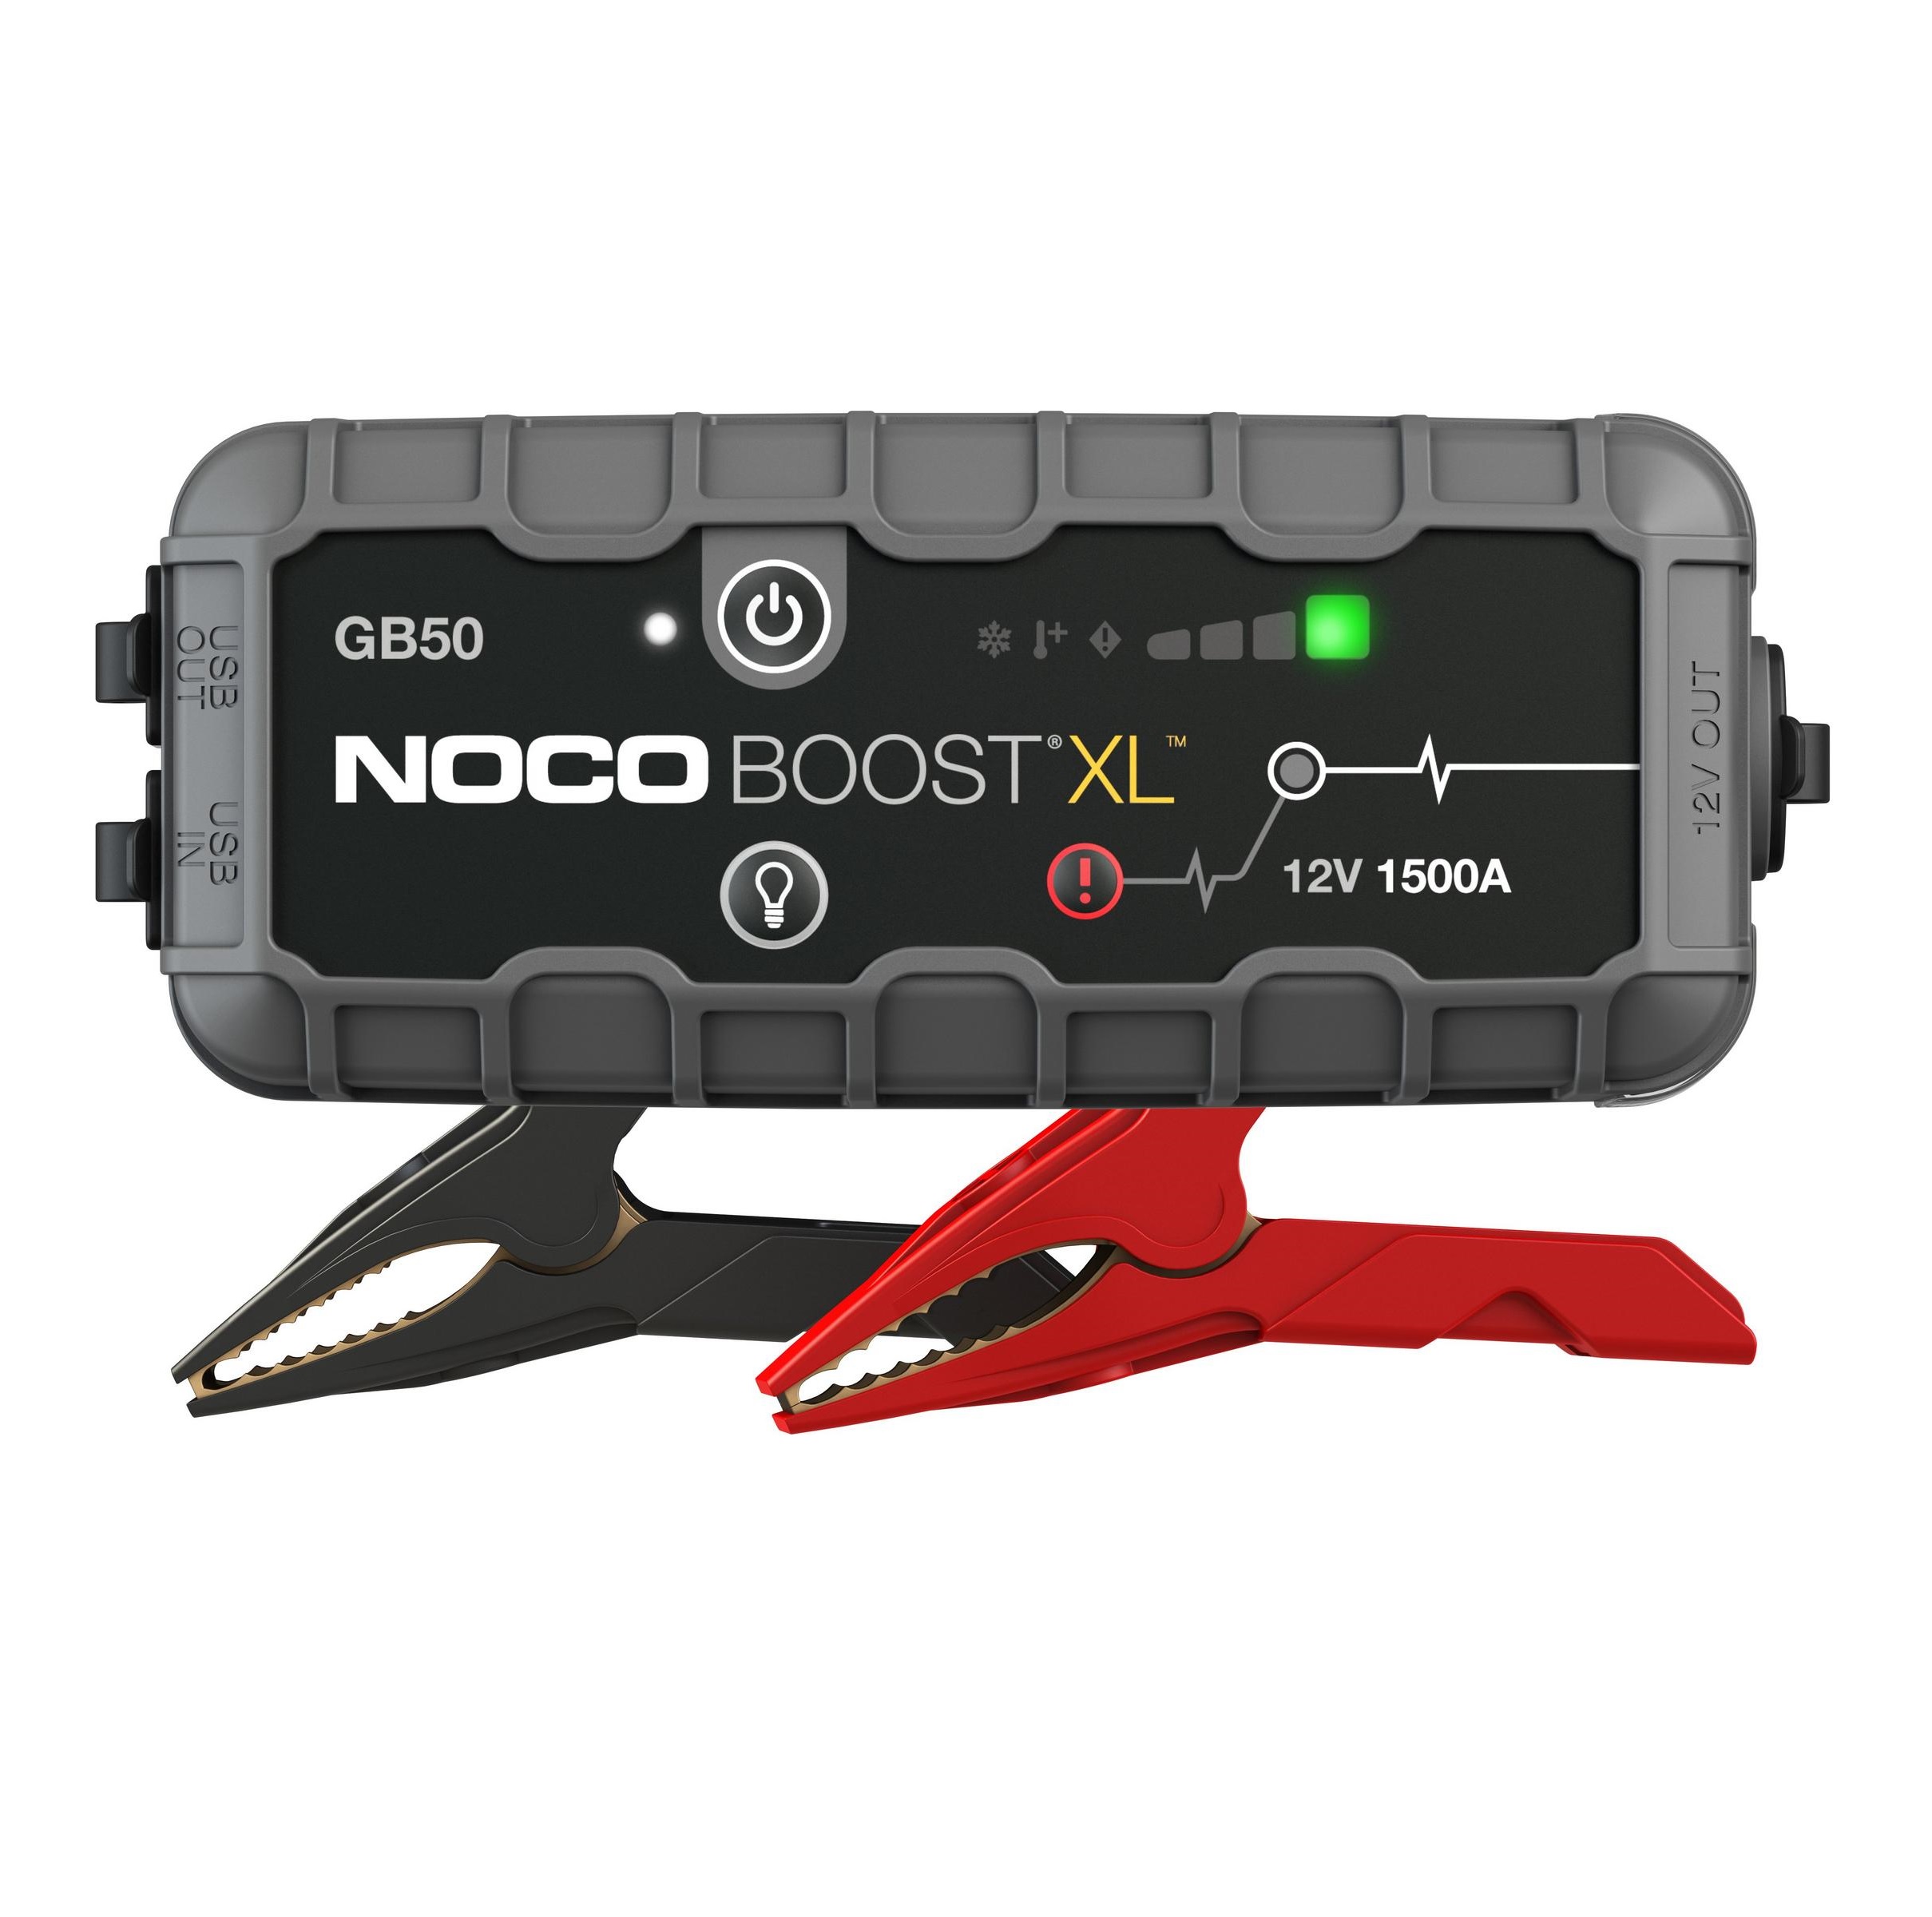 NOCO GB50 Boost XL 12V 1500A UltraSafe